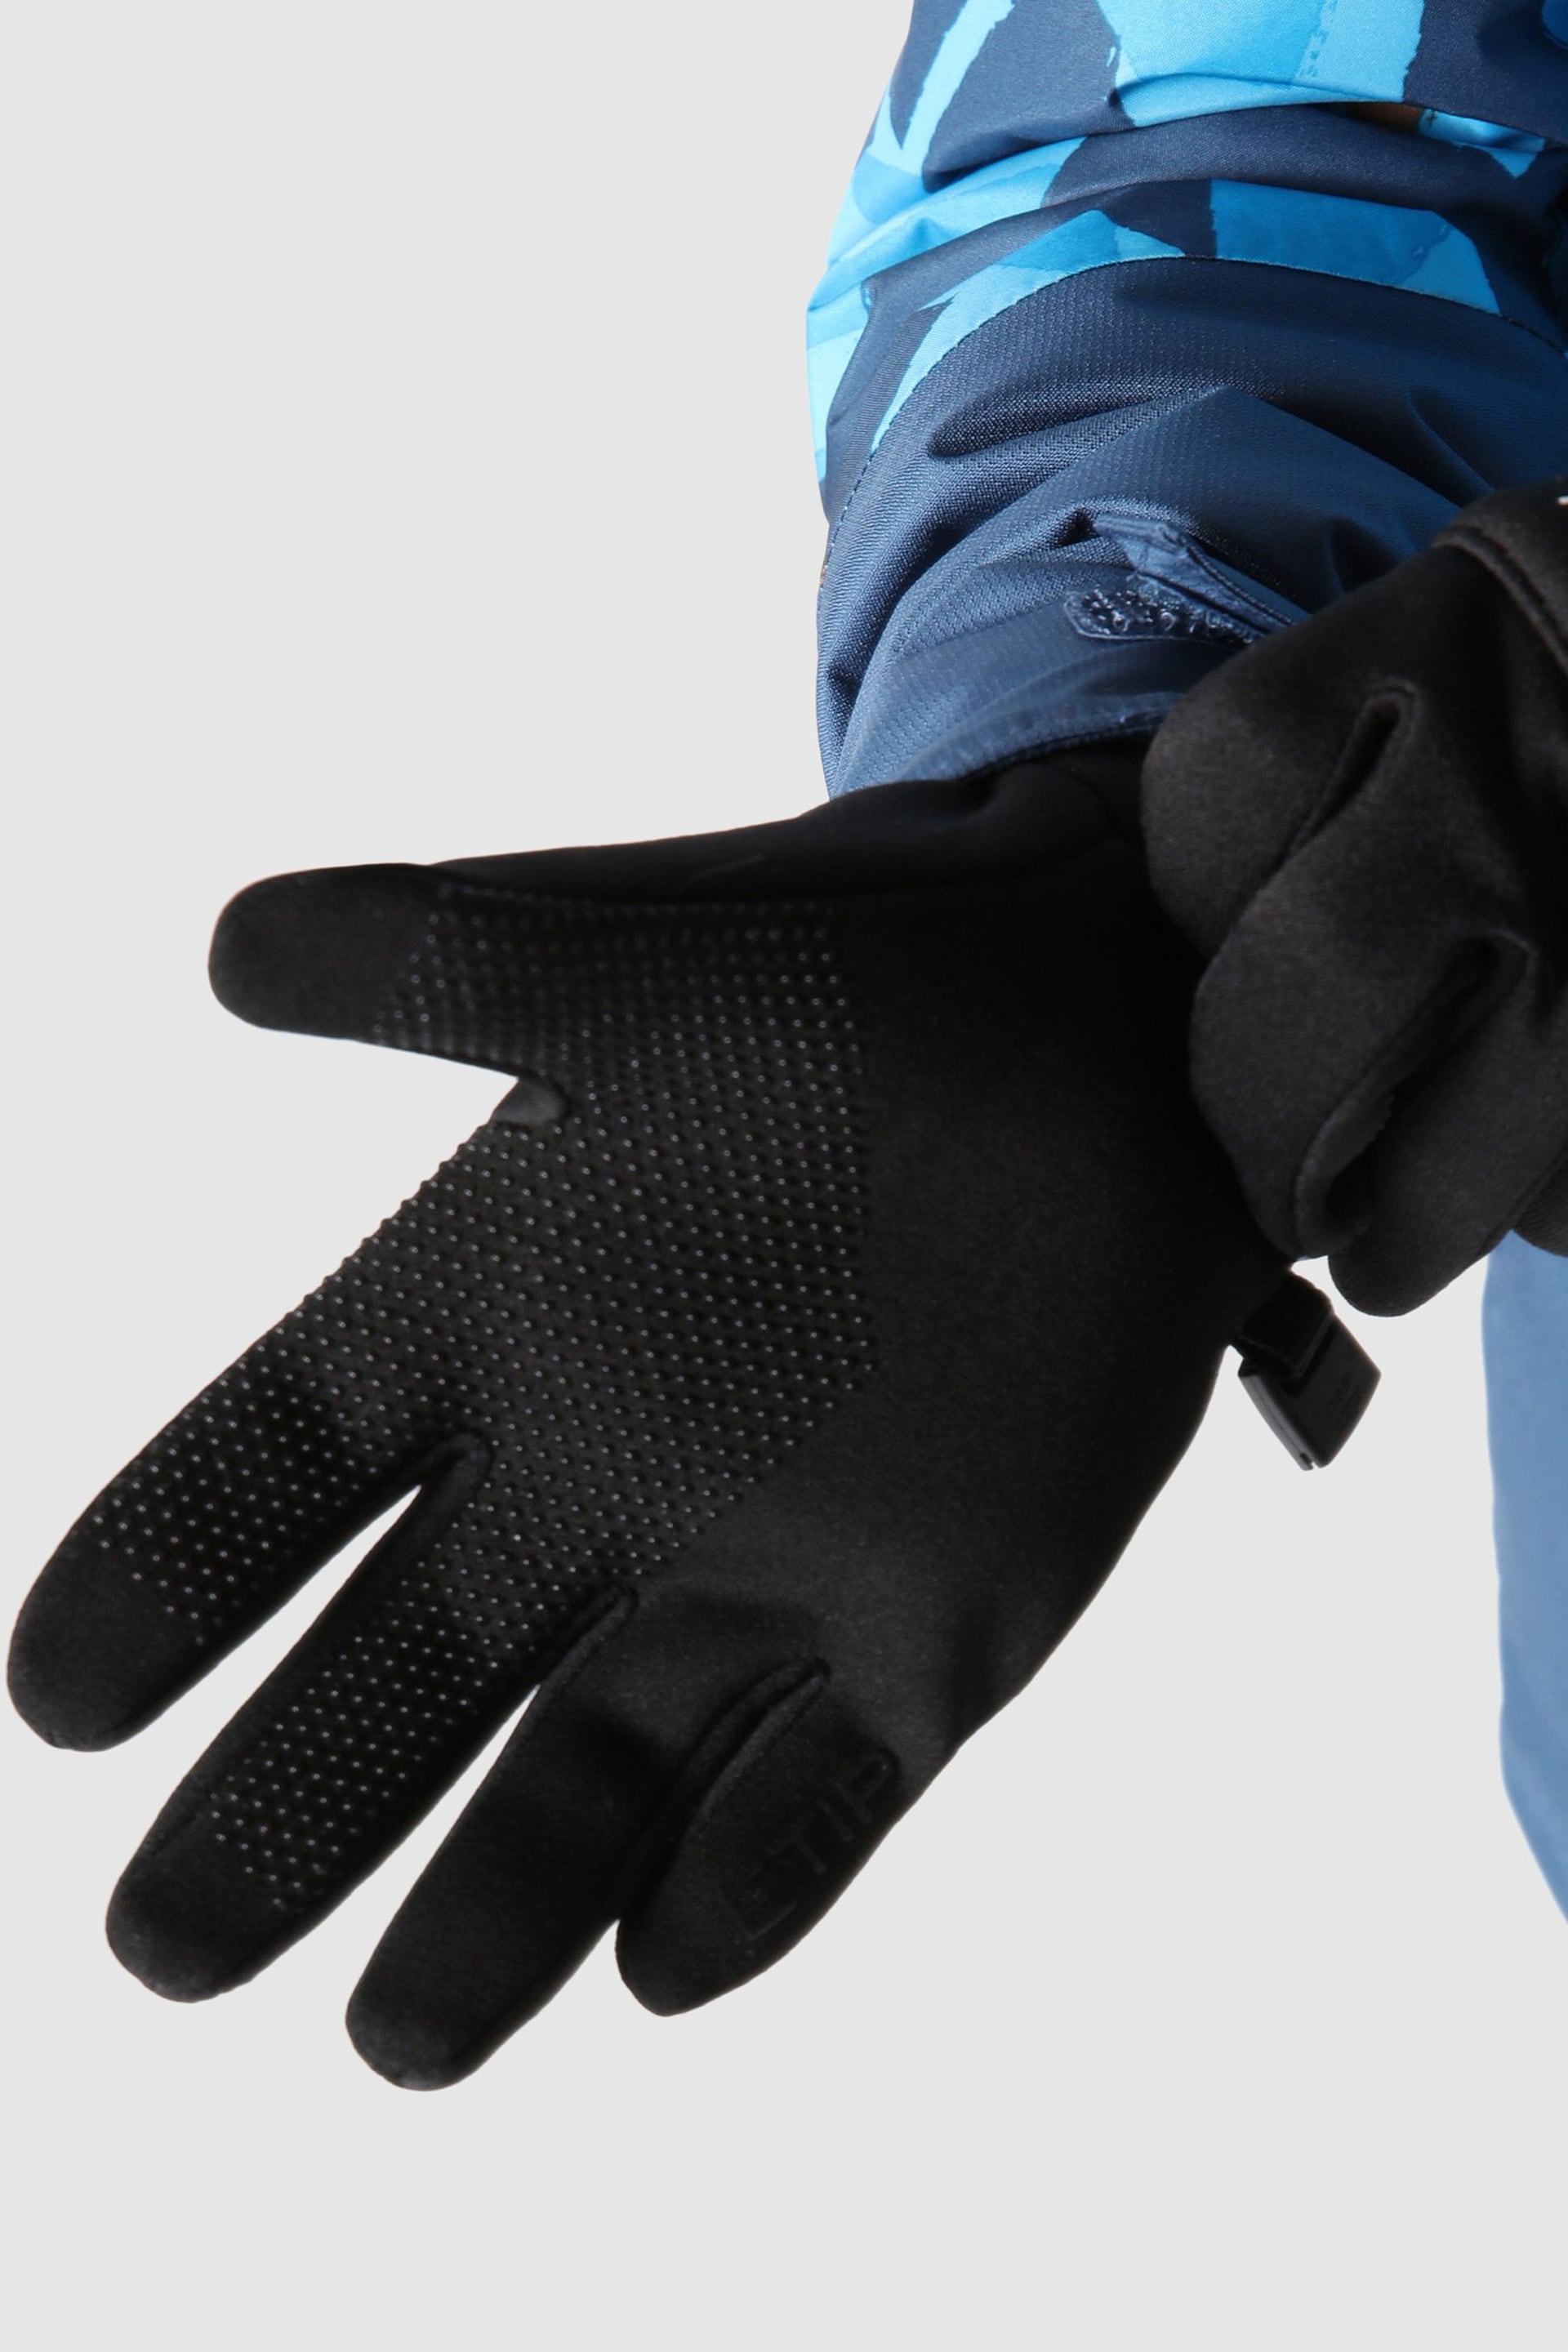 The North Face Black Kids Etip Gloves - Image 4 of 4